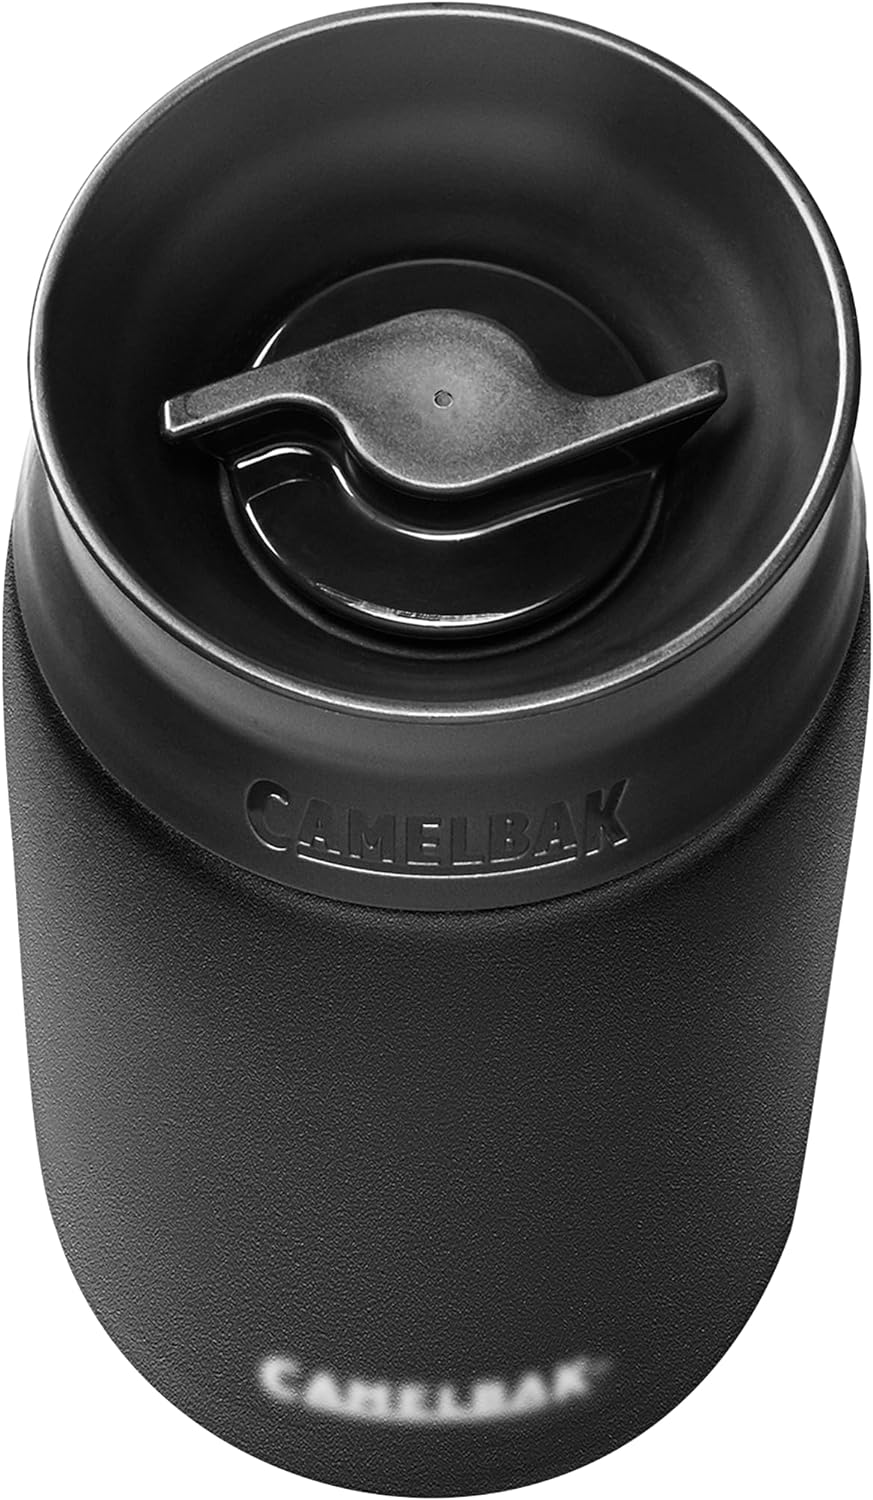 CAMELBAK Hot Cap Vacuum Insulated Stainless Steel Bottle Travel Mug 600ml in Black